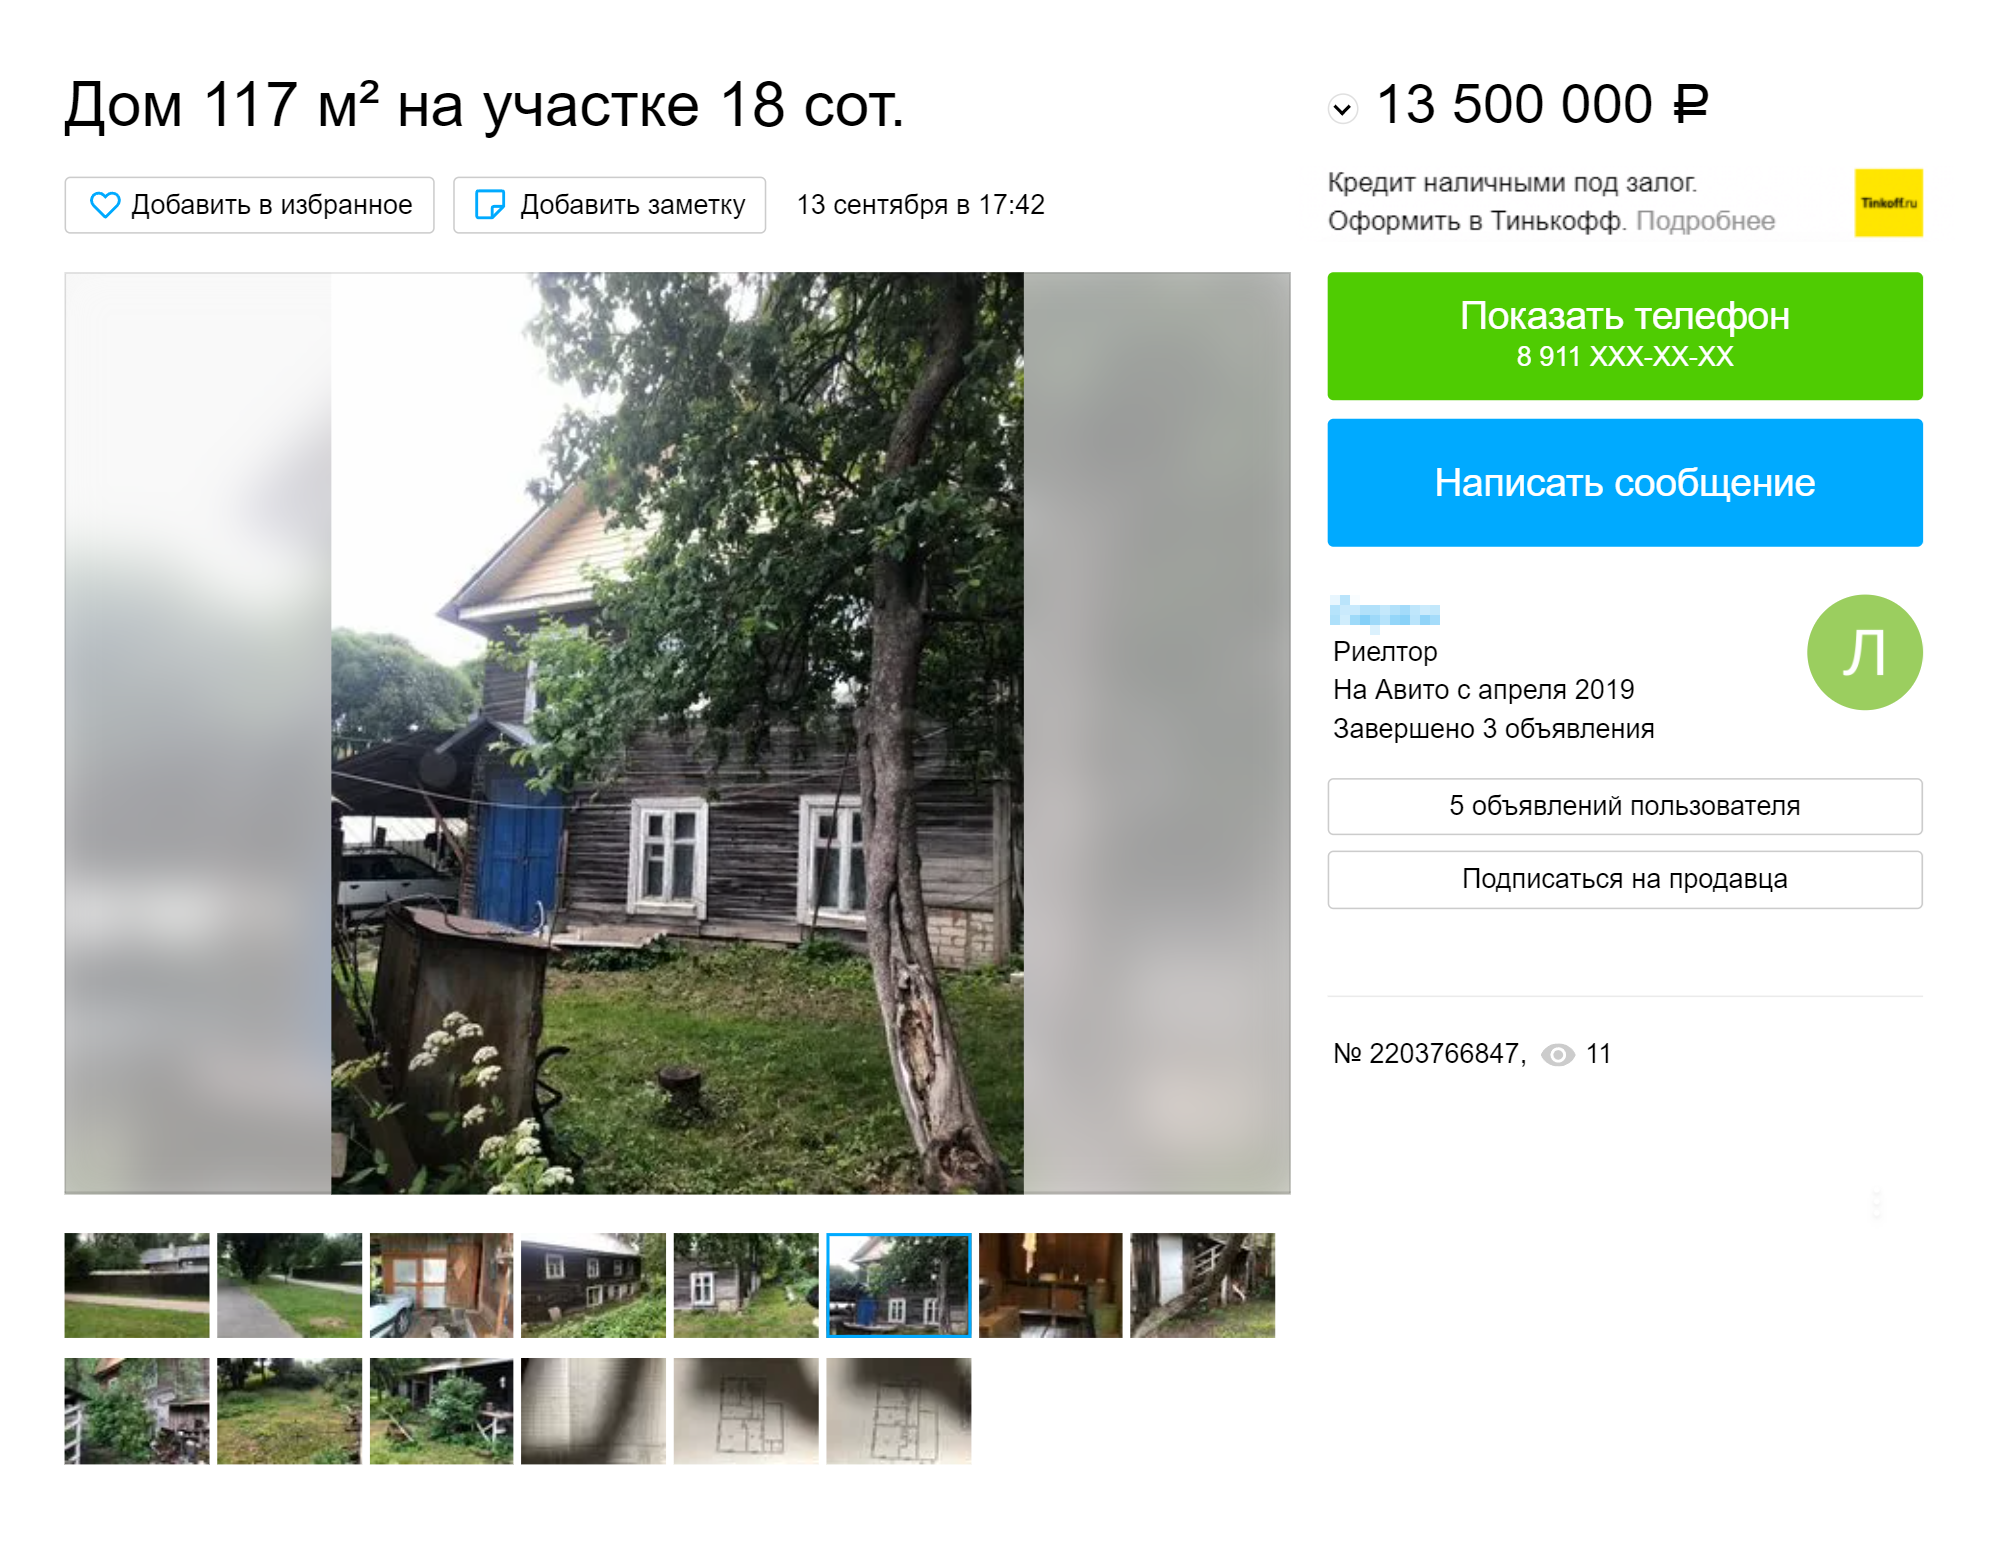 Дом в историческом центре Пскова: шесть спален, три кухни — 13,5 млн рублей